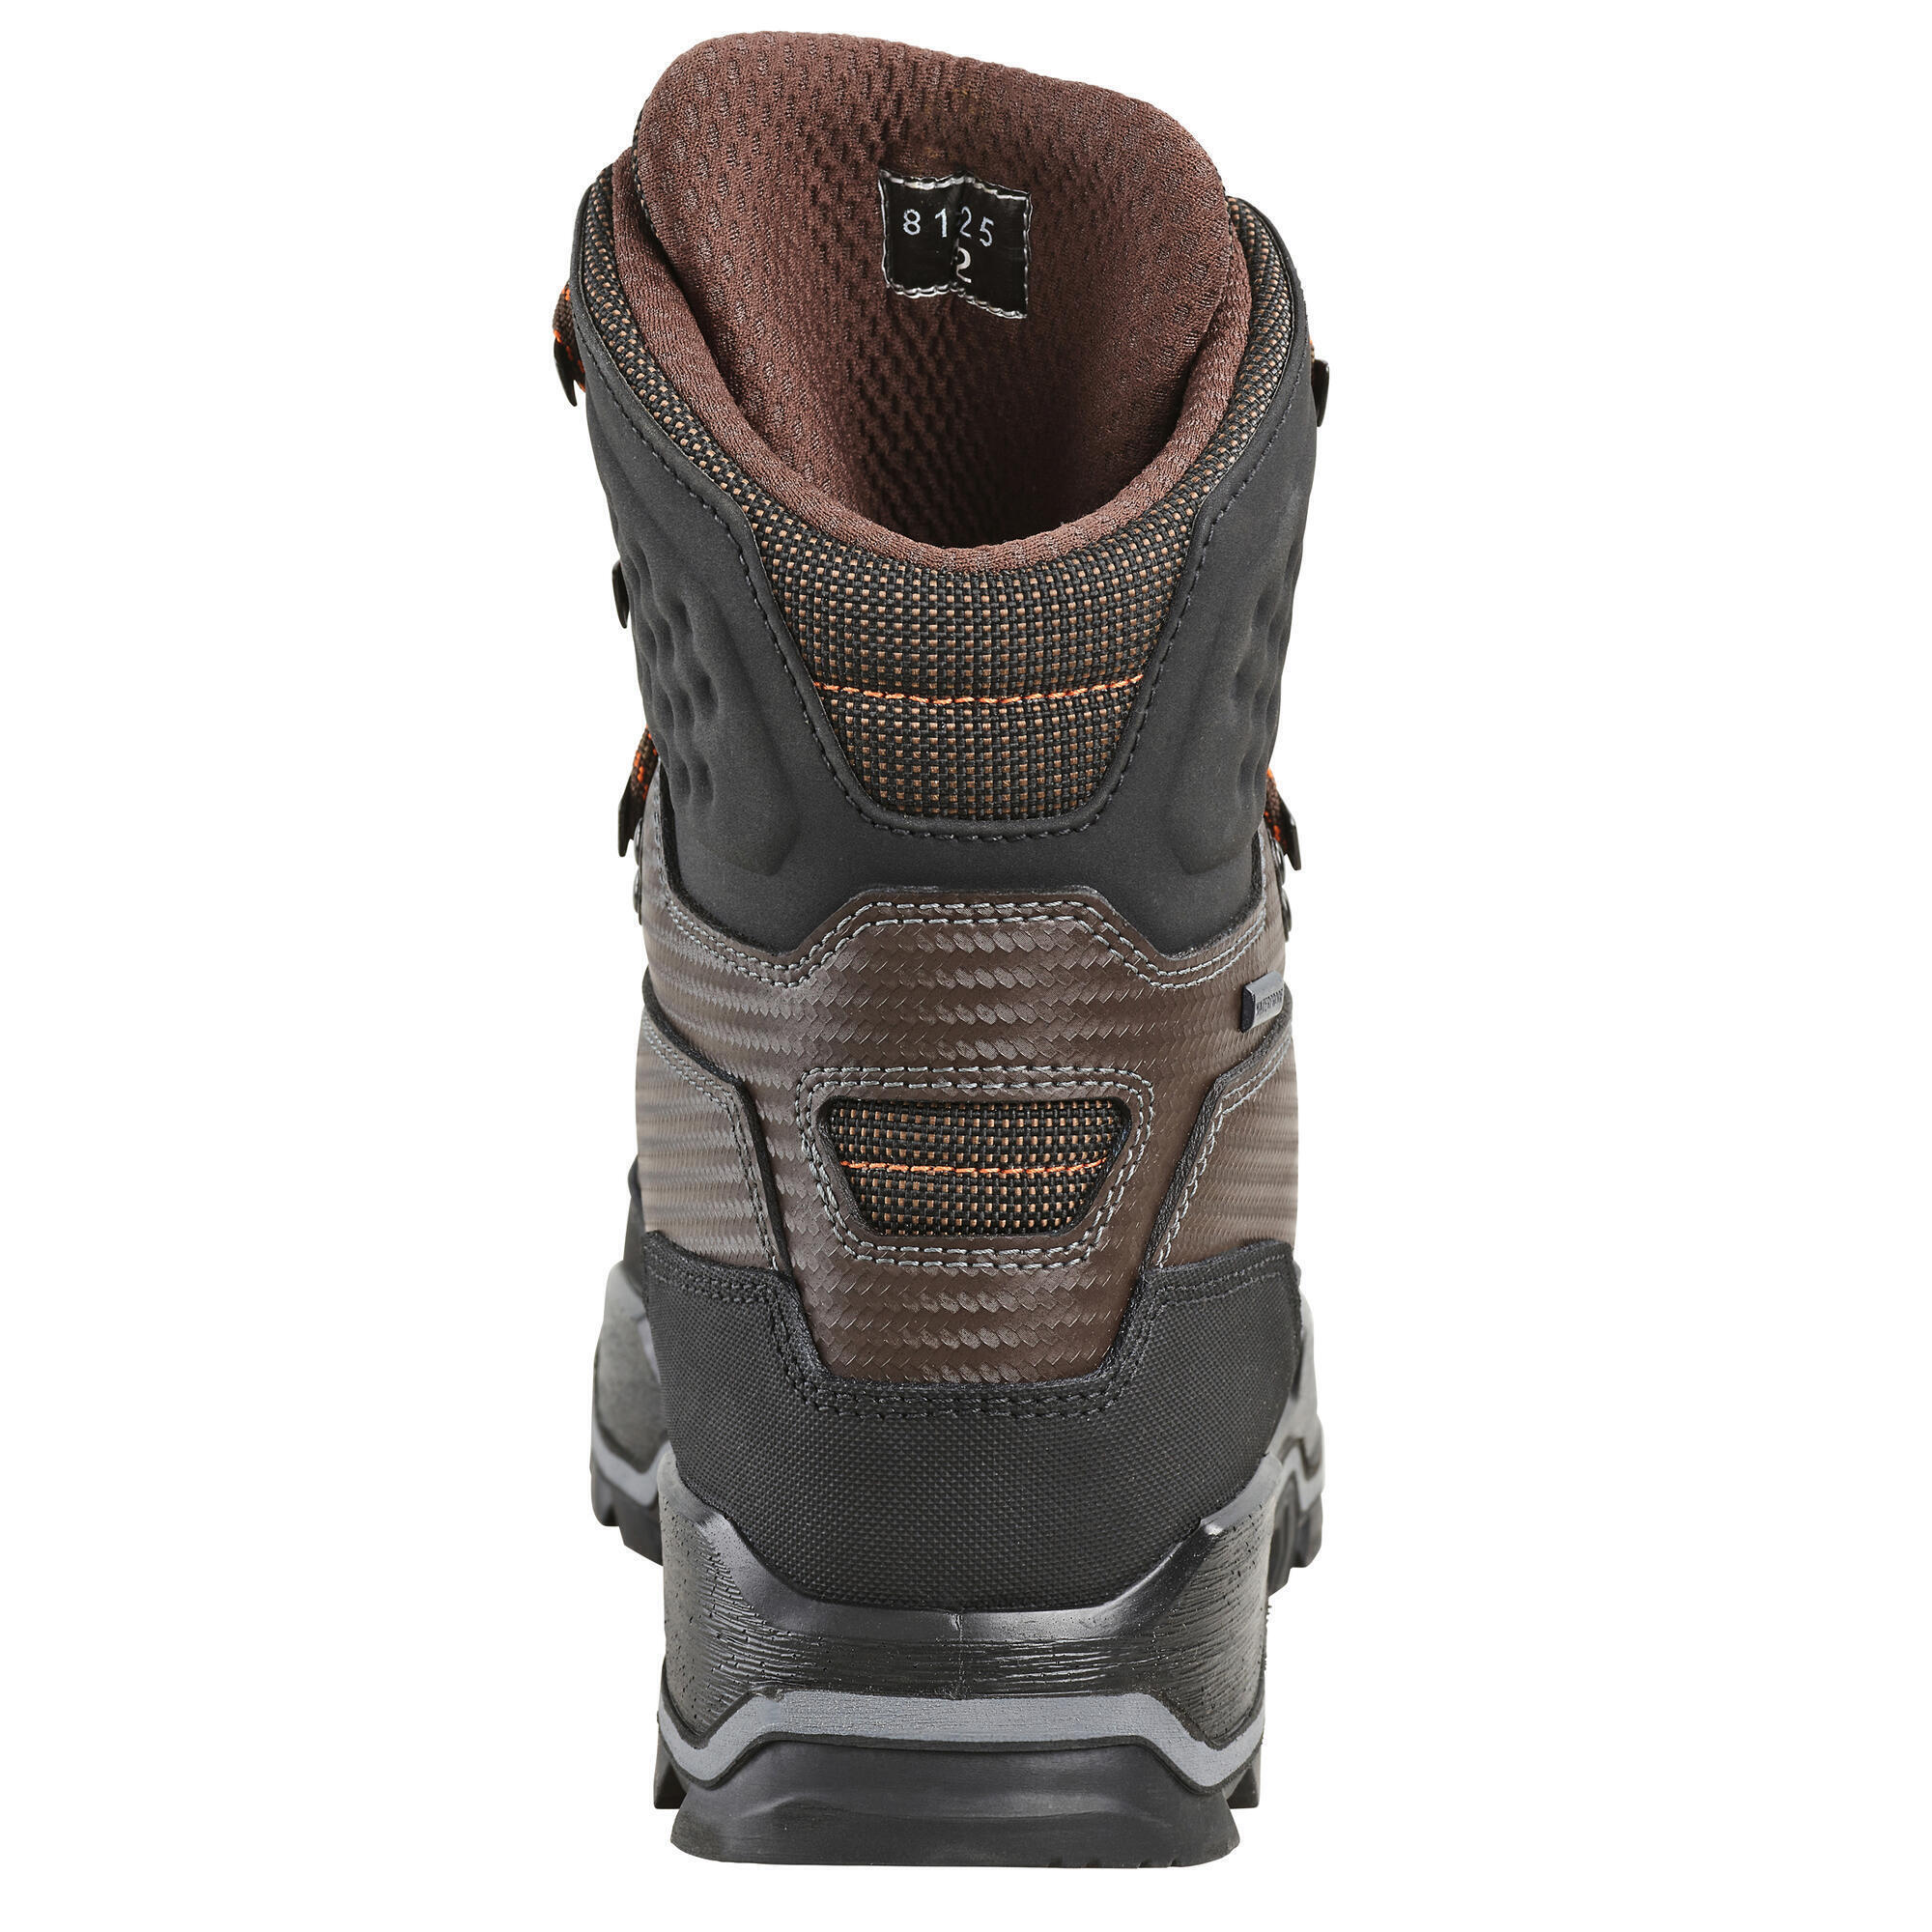 Охотничьи ботинки CROSSHUNT 900 V2 водонепроницаемые прочные коричневыеSOLOGNAC – купить из-за границы через сервис «CDEK.Shopping»